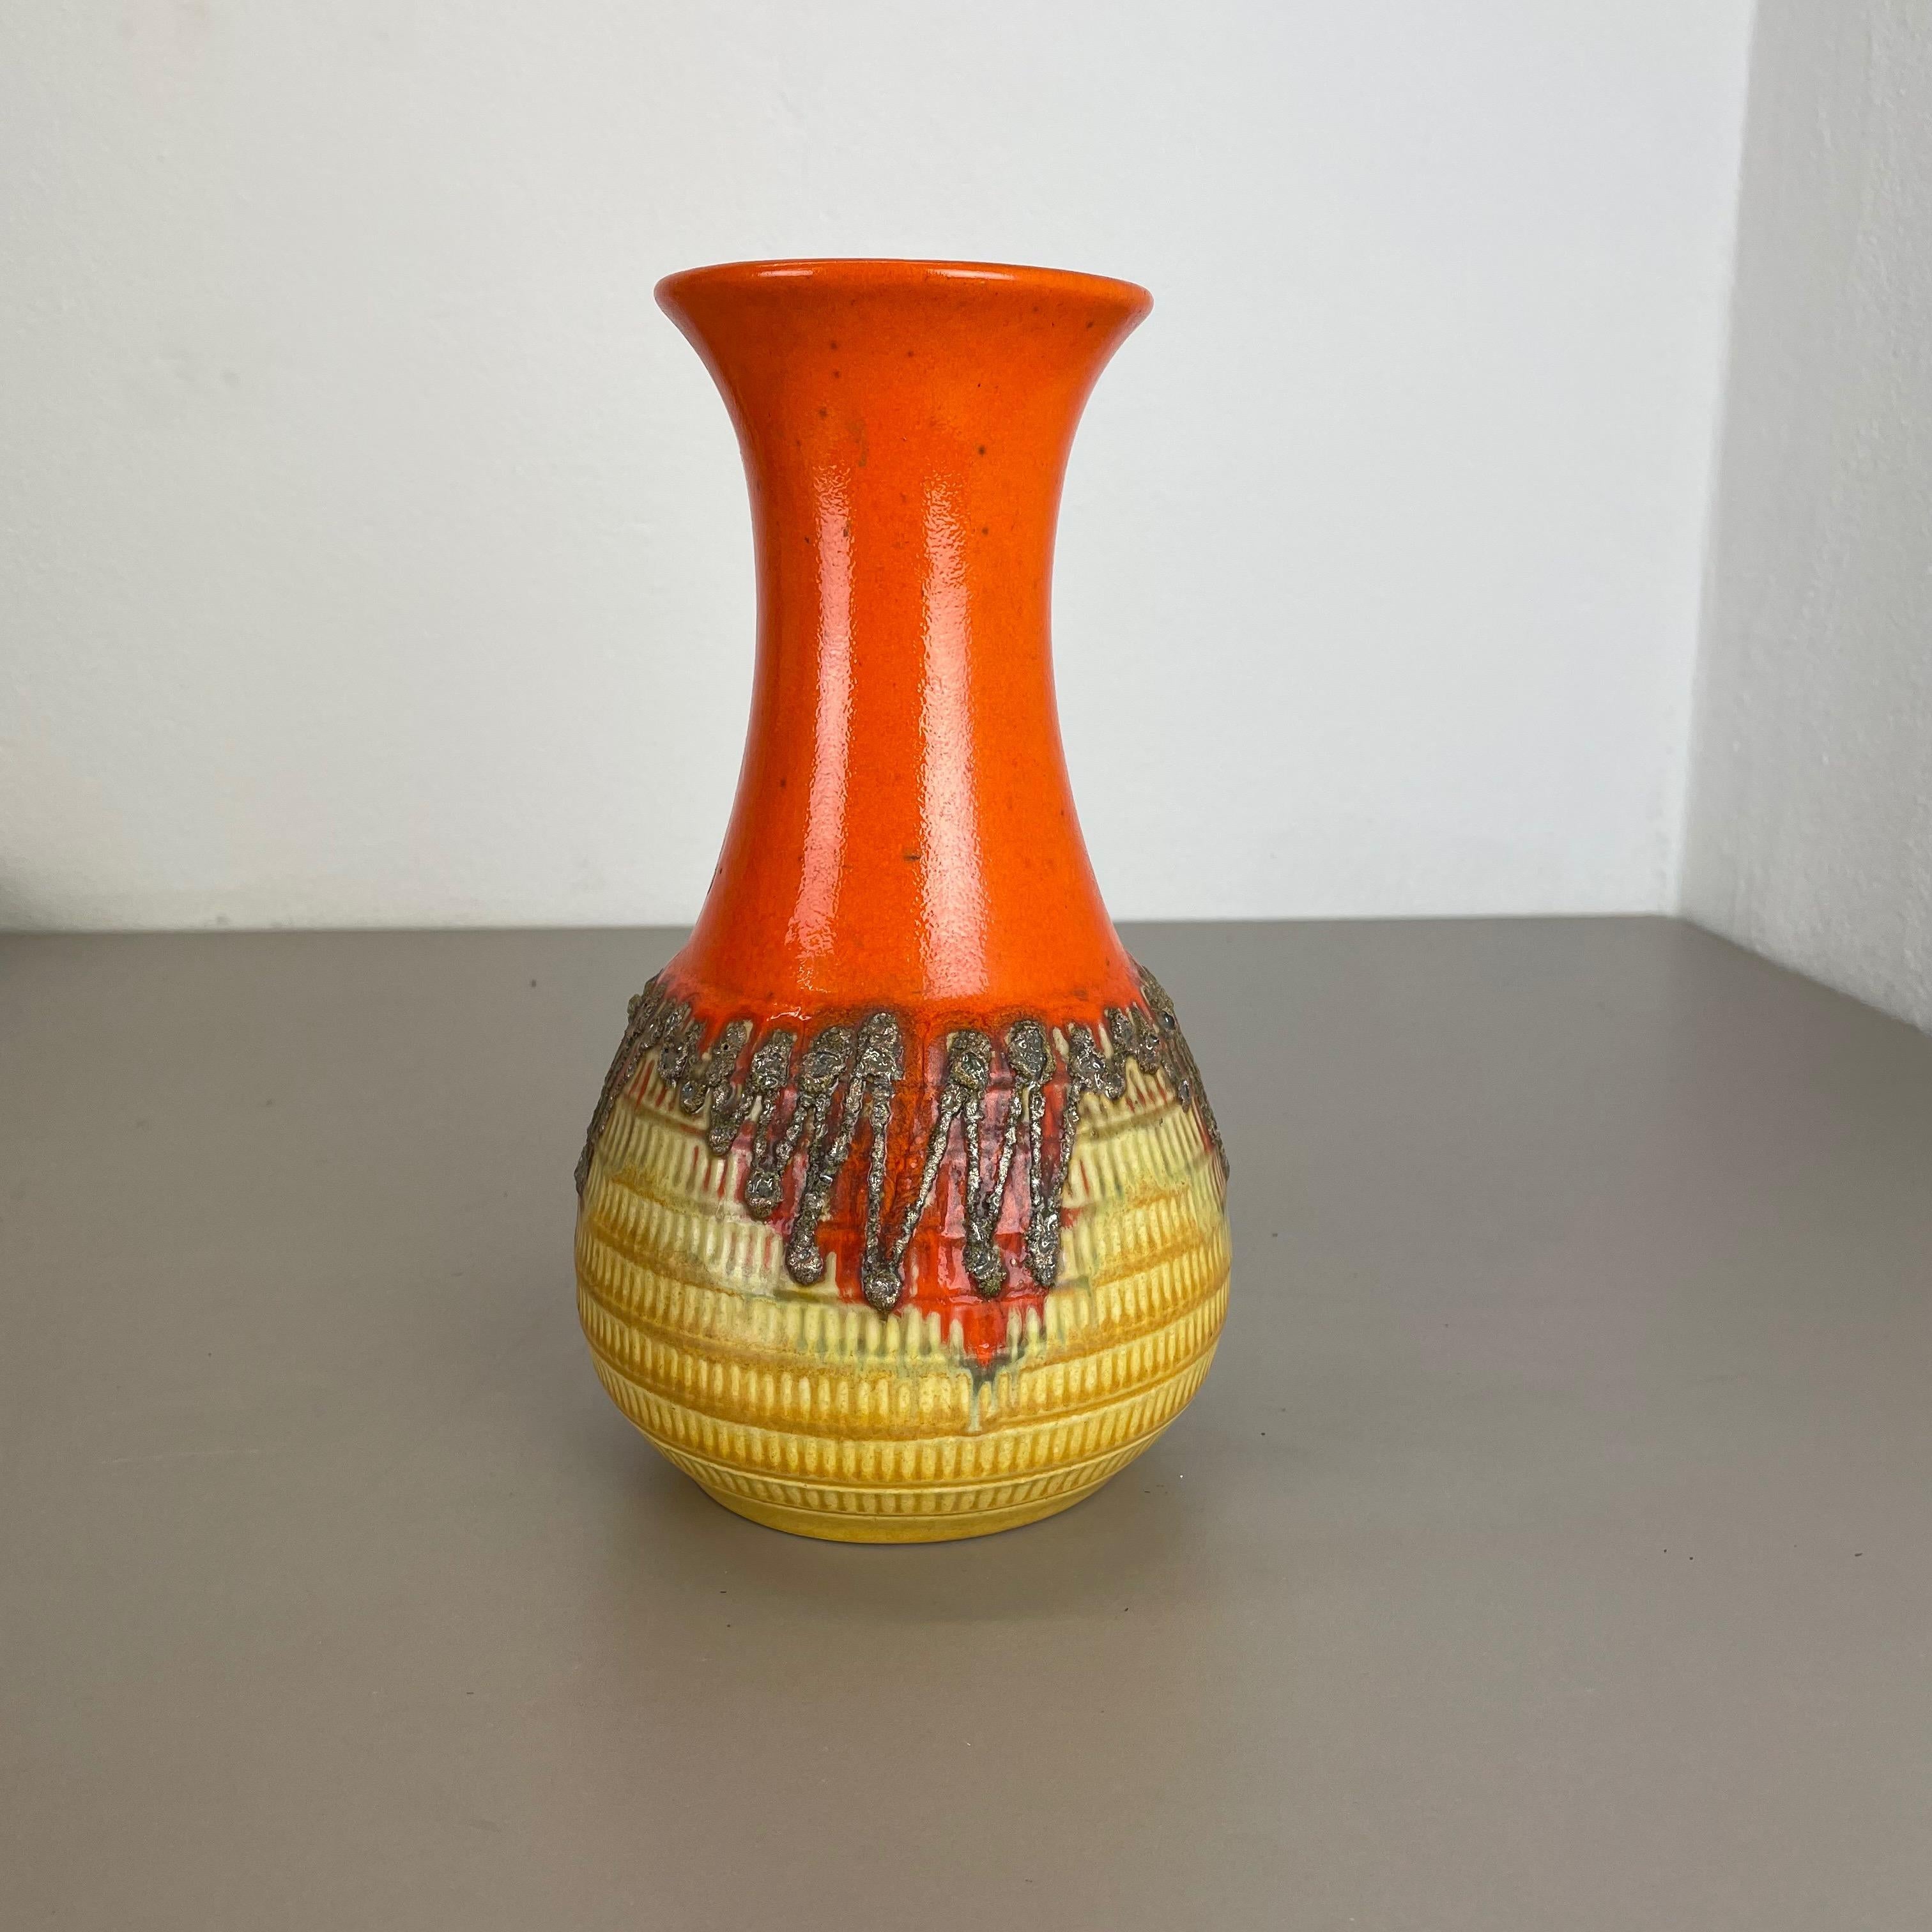 Article :

Vase en céramique


Producteur :

Jasba Ceramic, Allemagne



Décennie :

1970s




Vase original en céramique des années 1970, fabriqué en Allemagne. Production allemande de haute qualité avec une belle illustration abstraite en orange